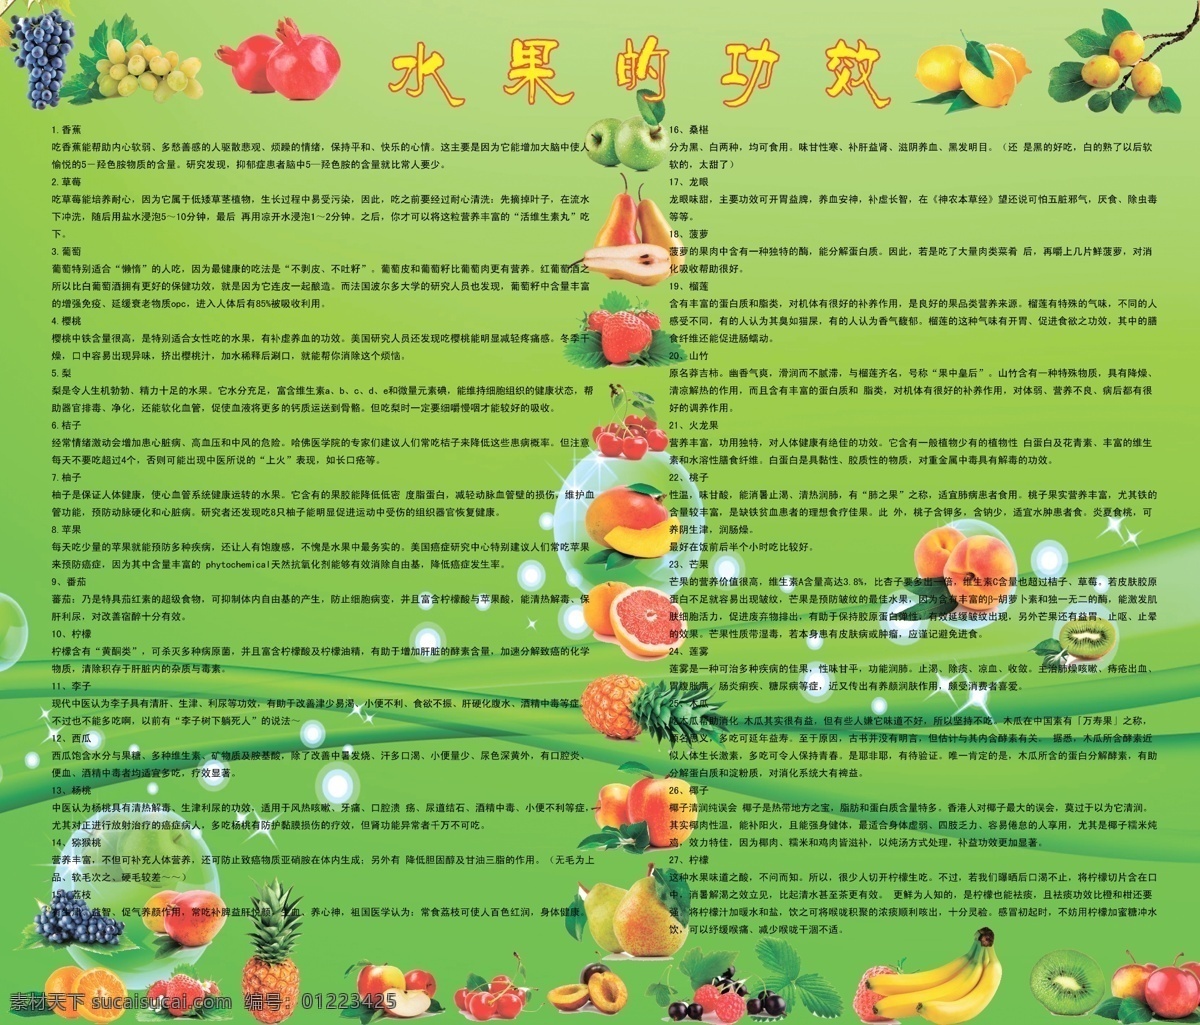 菠萝 广告设计模板 健康知识展板 弥猴桃 苹果 水果 桃子 香蕉 杏子 各式 功效 展板模板 源文件 其他展板设计